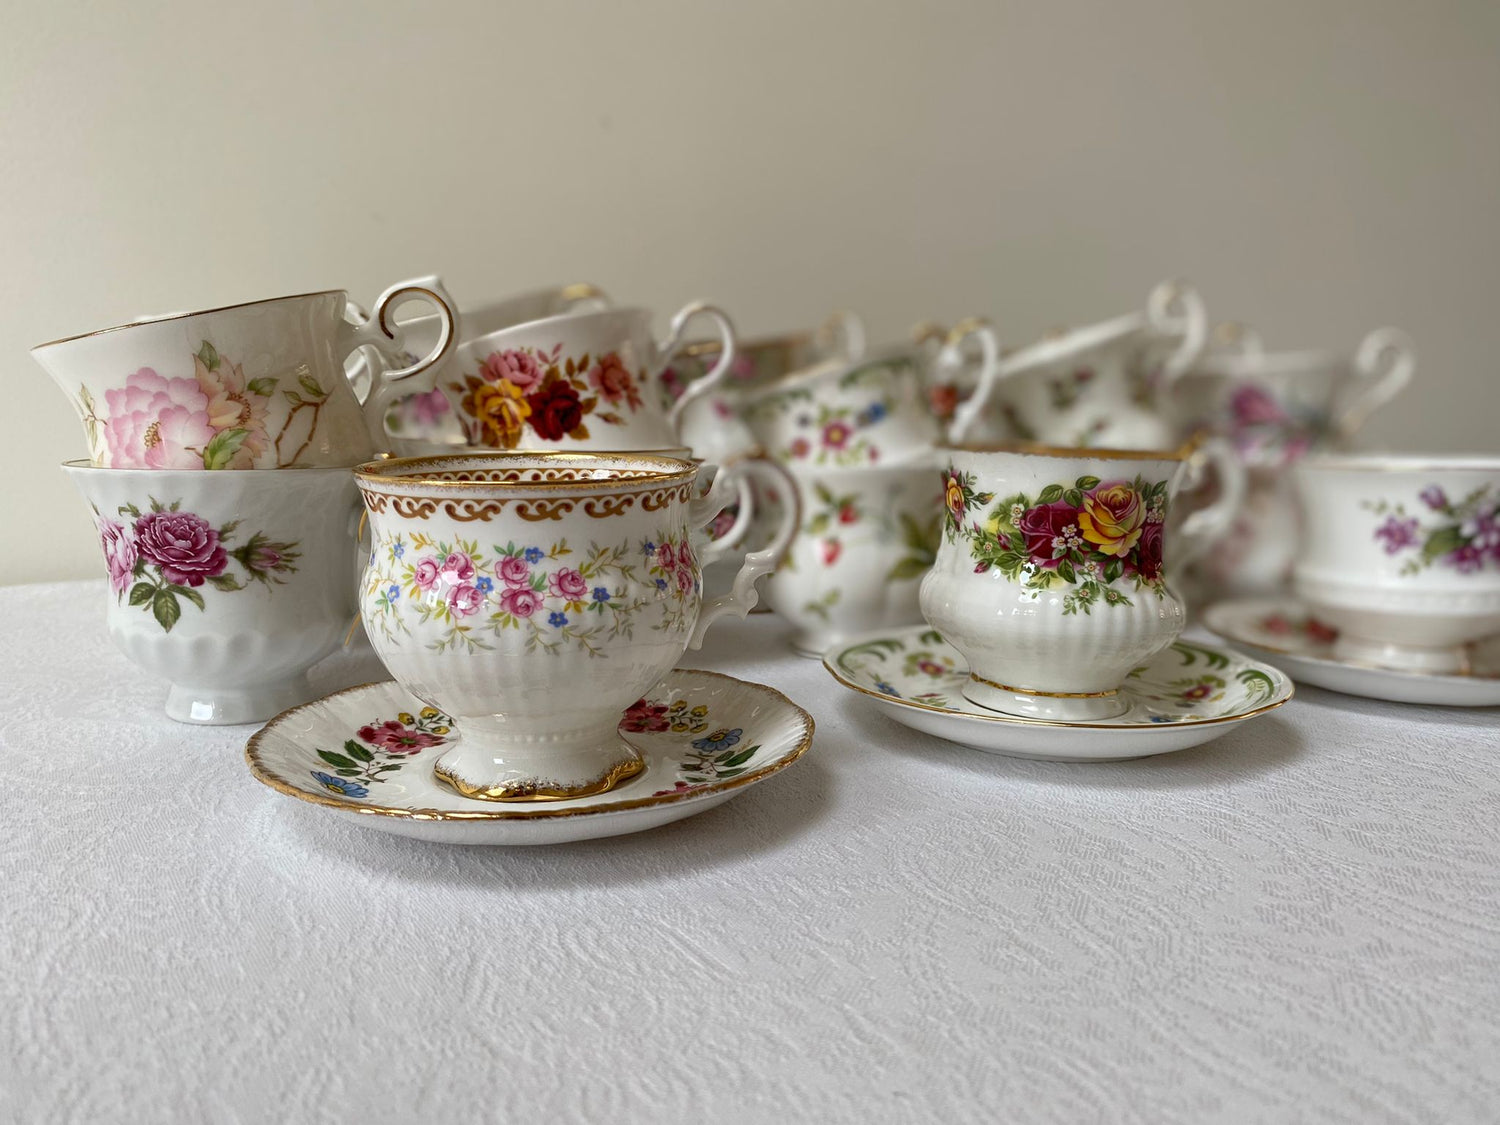 Vintage servies huren. High Tea Box aan huis bestellen. Verhuur voor een Downton Abbey tafel huren. Vintage & Pastries 